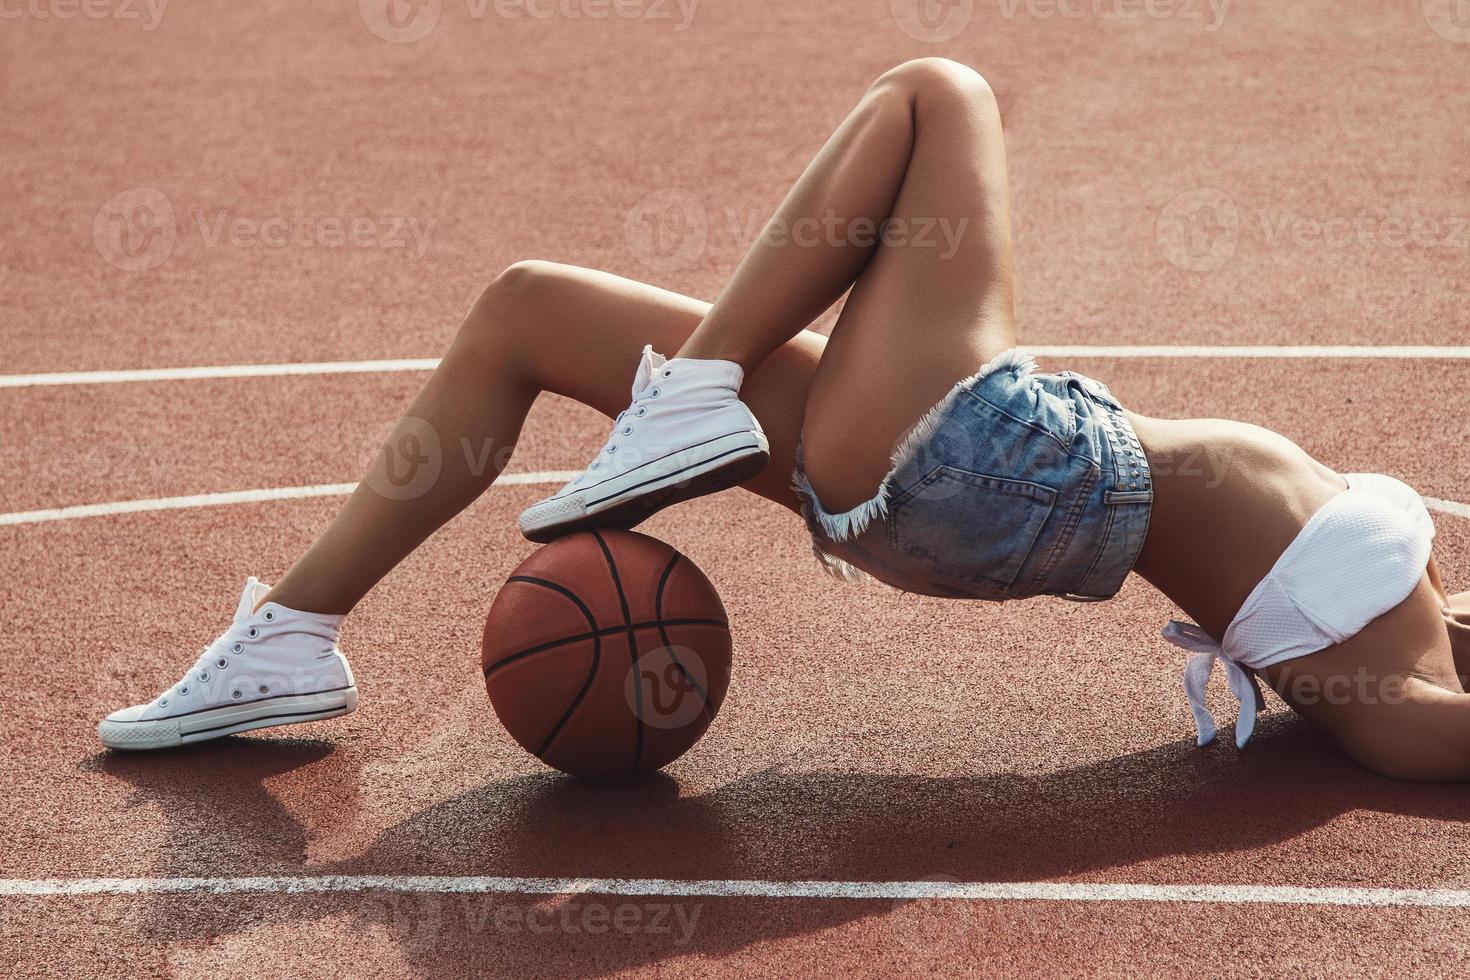 ung sexig kvinna med på en basketboll lekplats foto